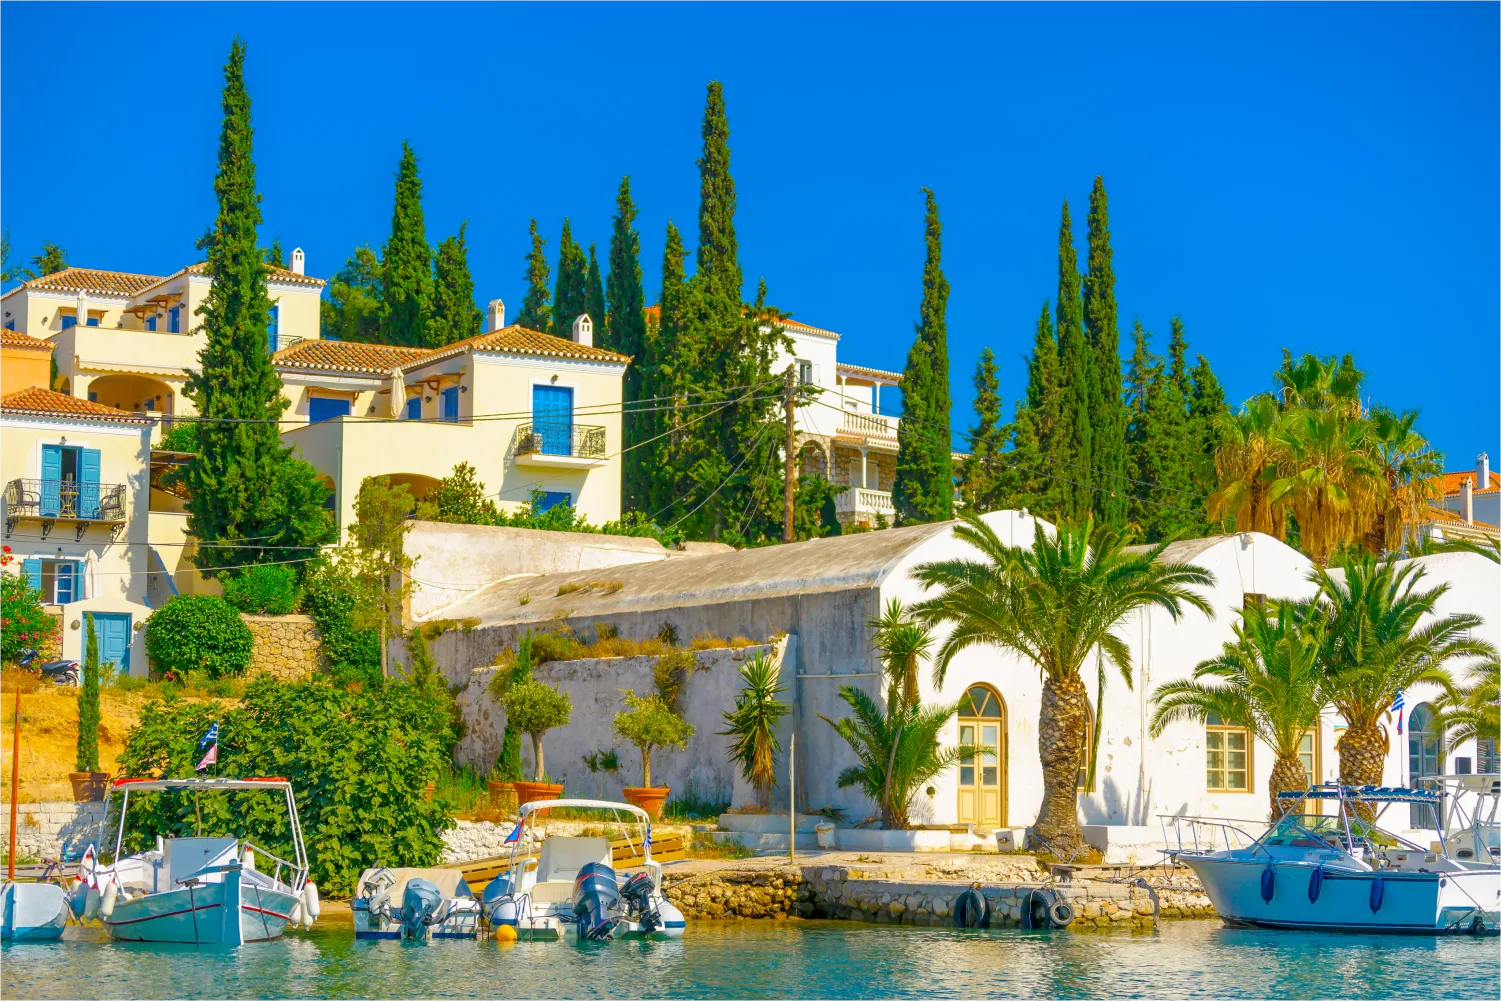 Le vieux port de Spetses avec ses grands arbres et ses maisons traditionnelles